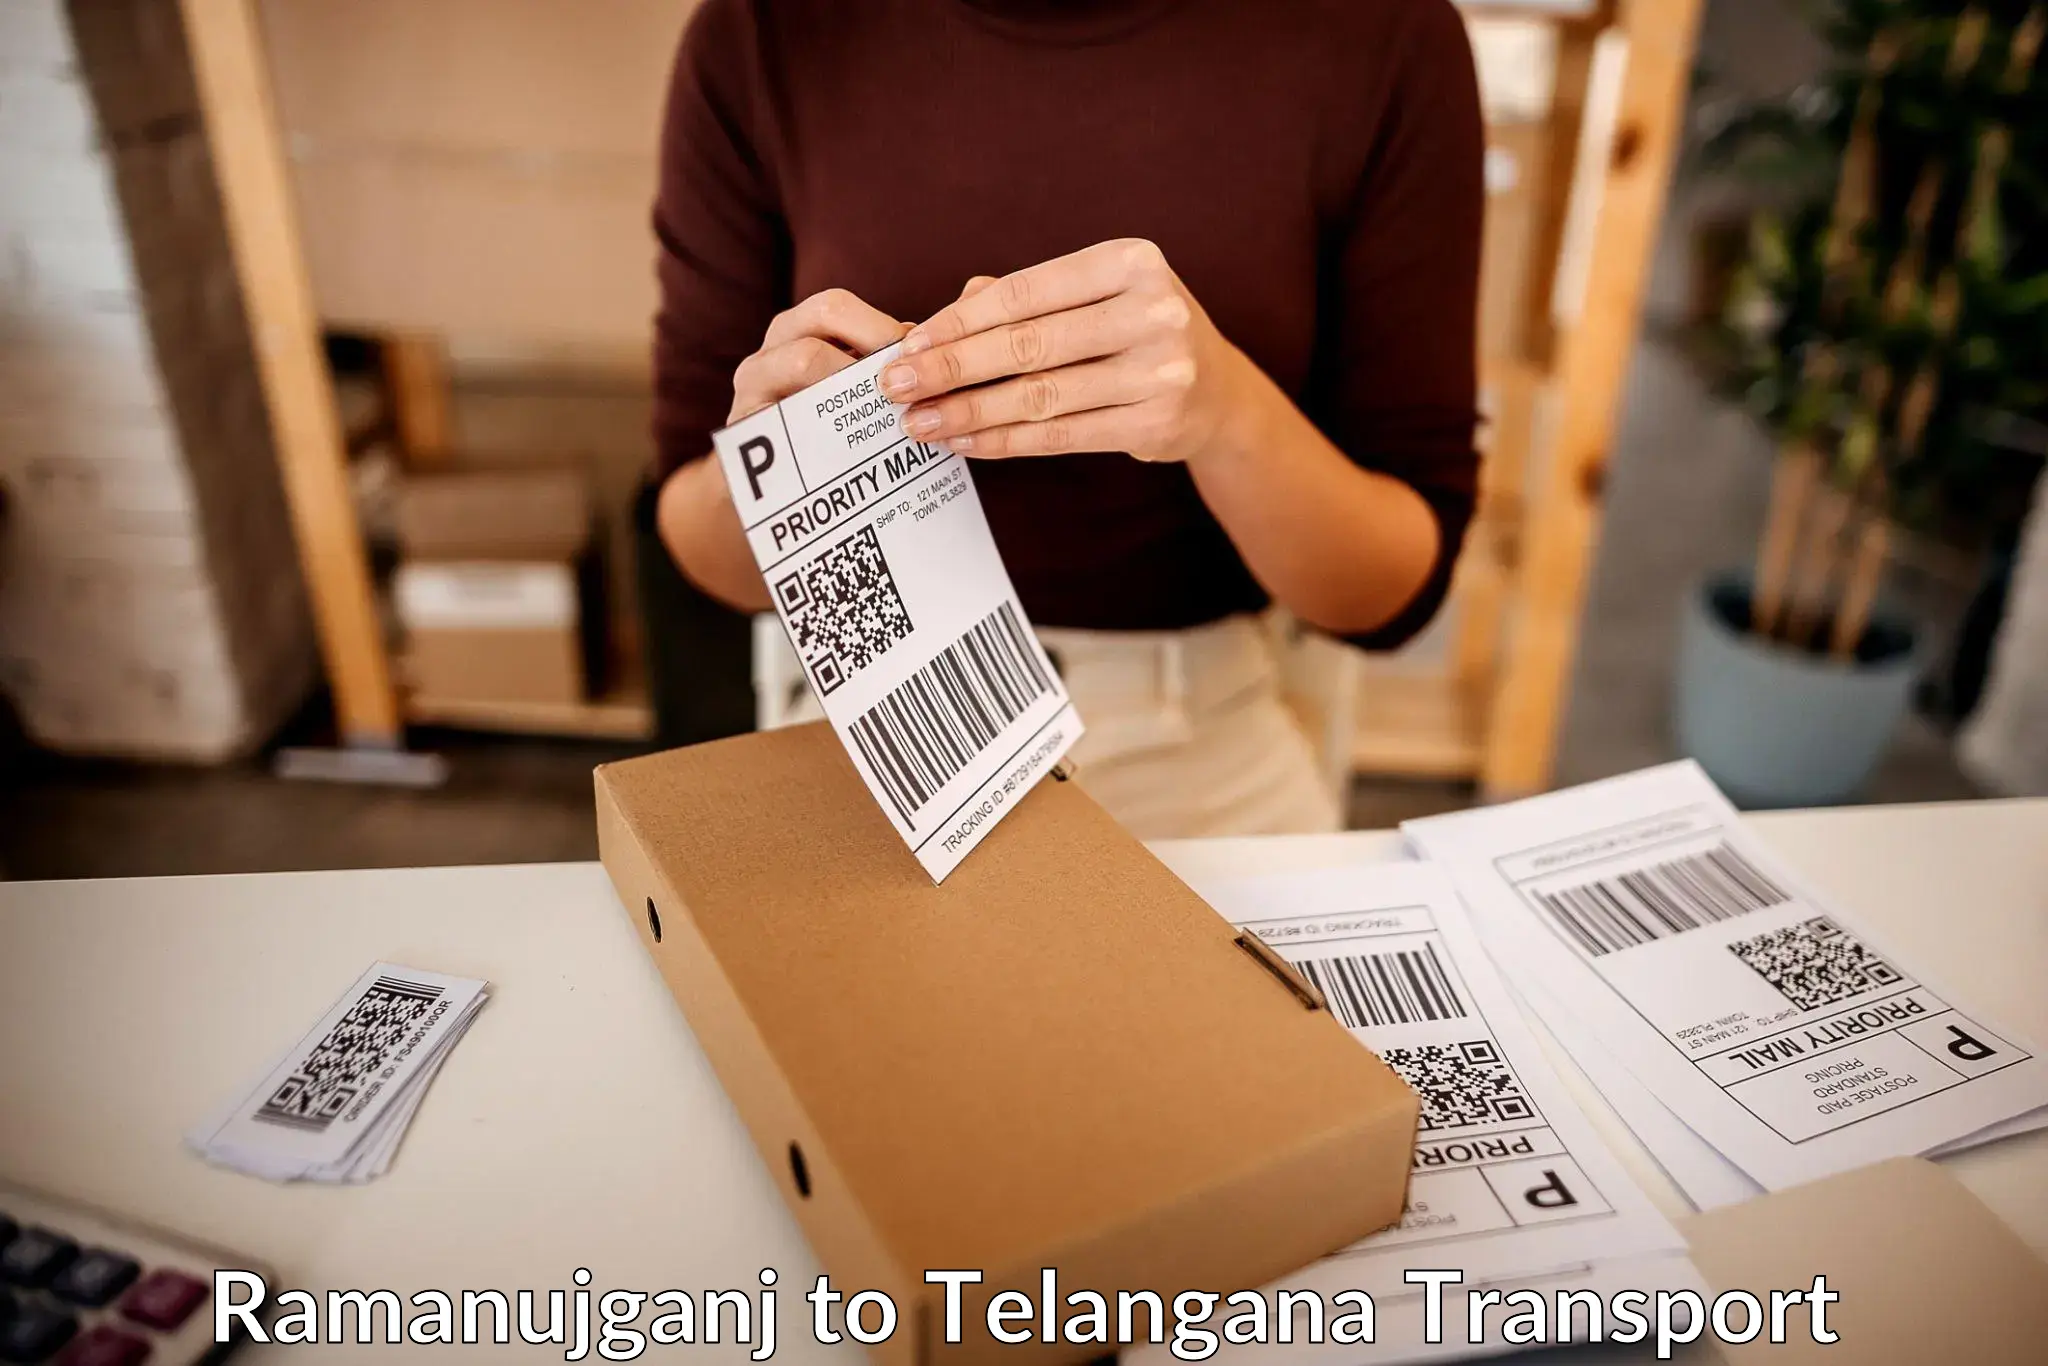 Two wheeler parcel service Ramanujganj to Yellareddipet